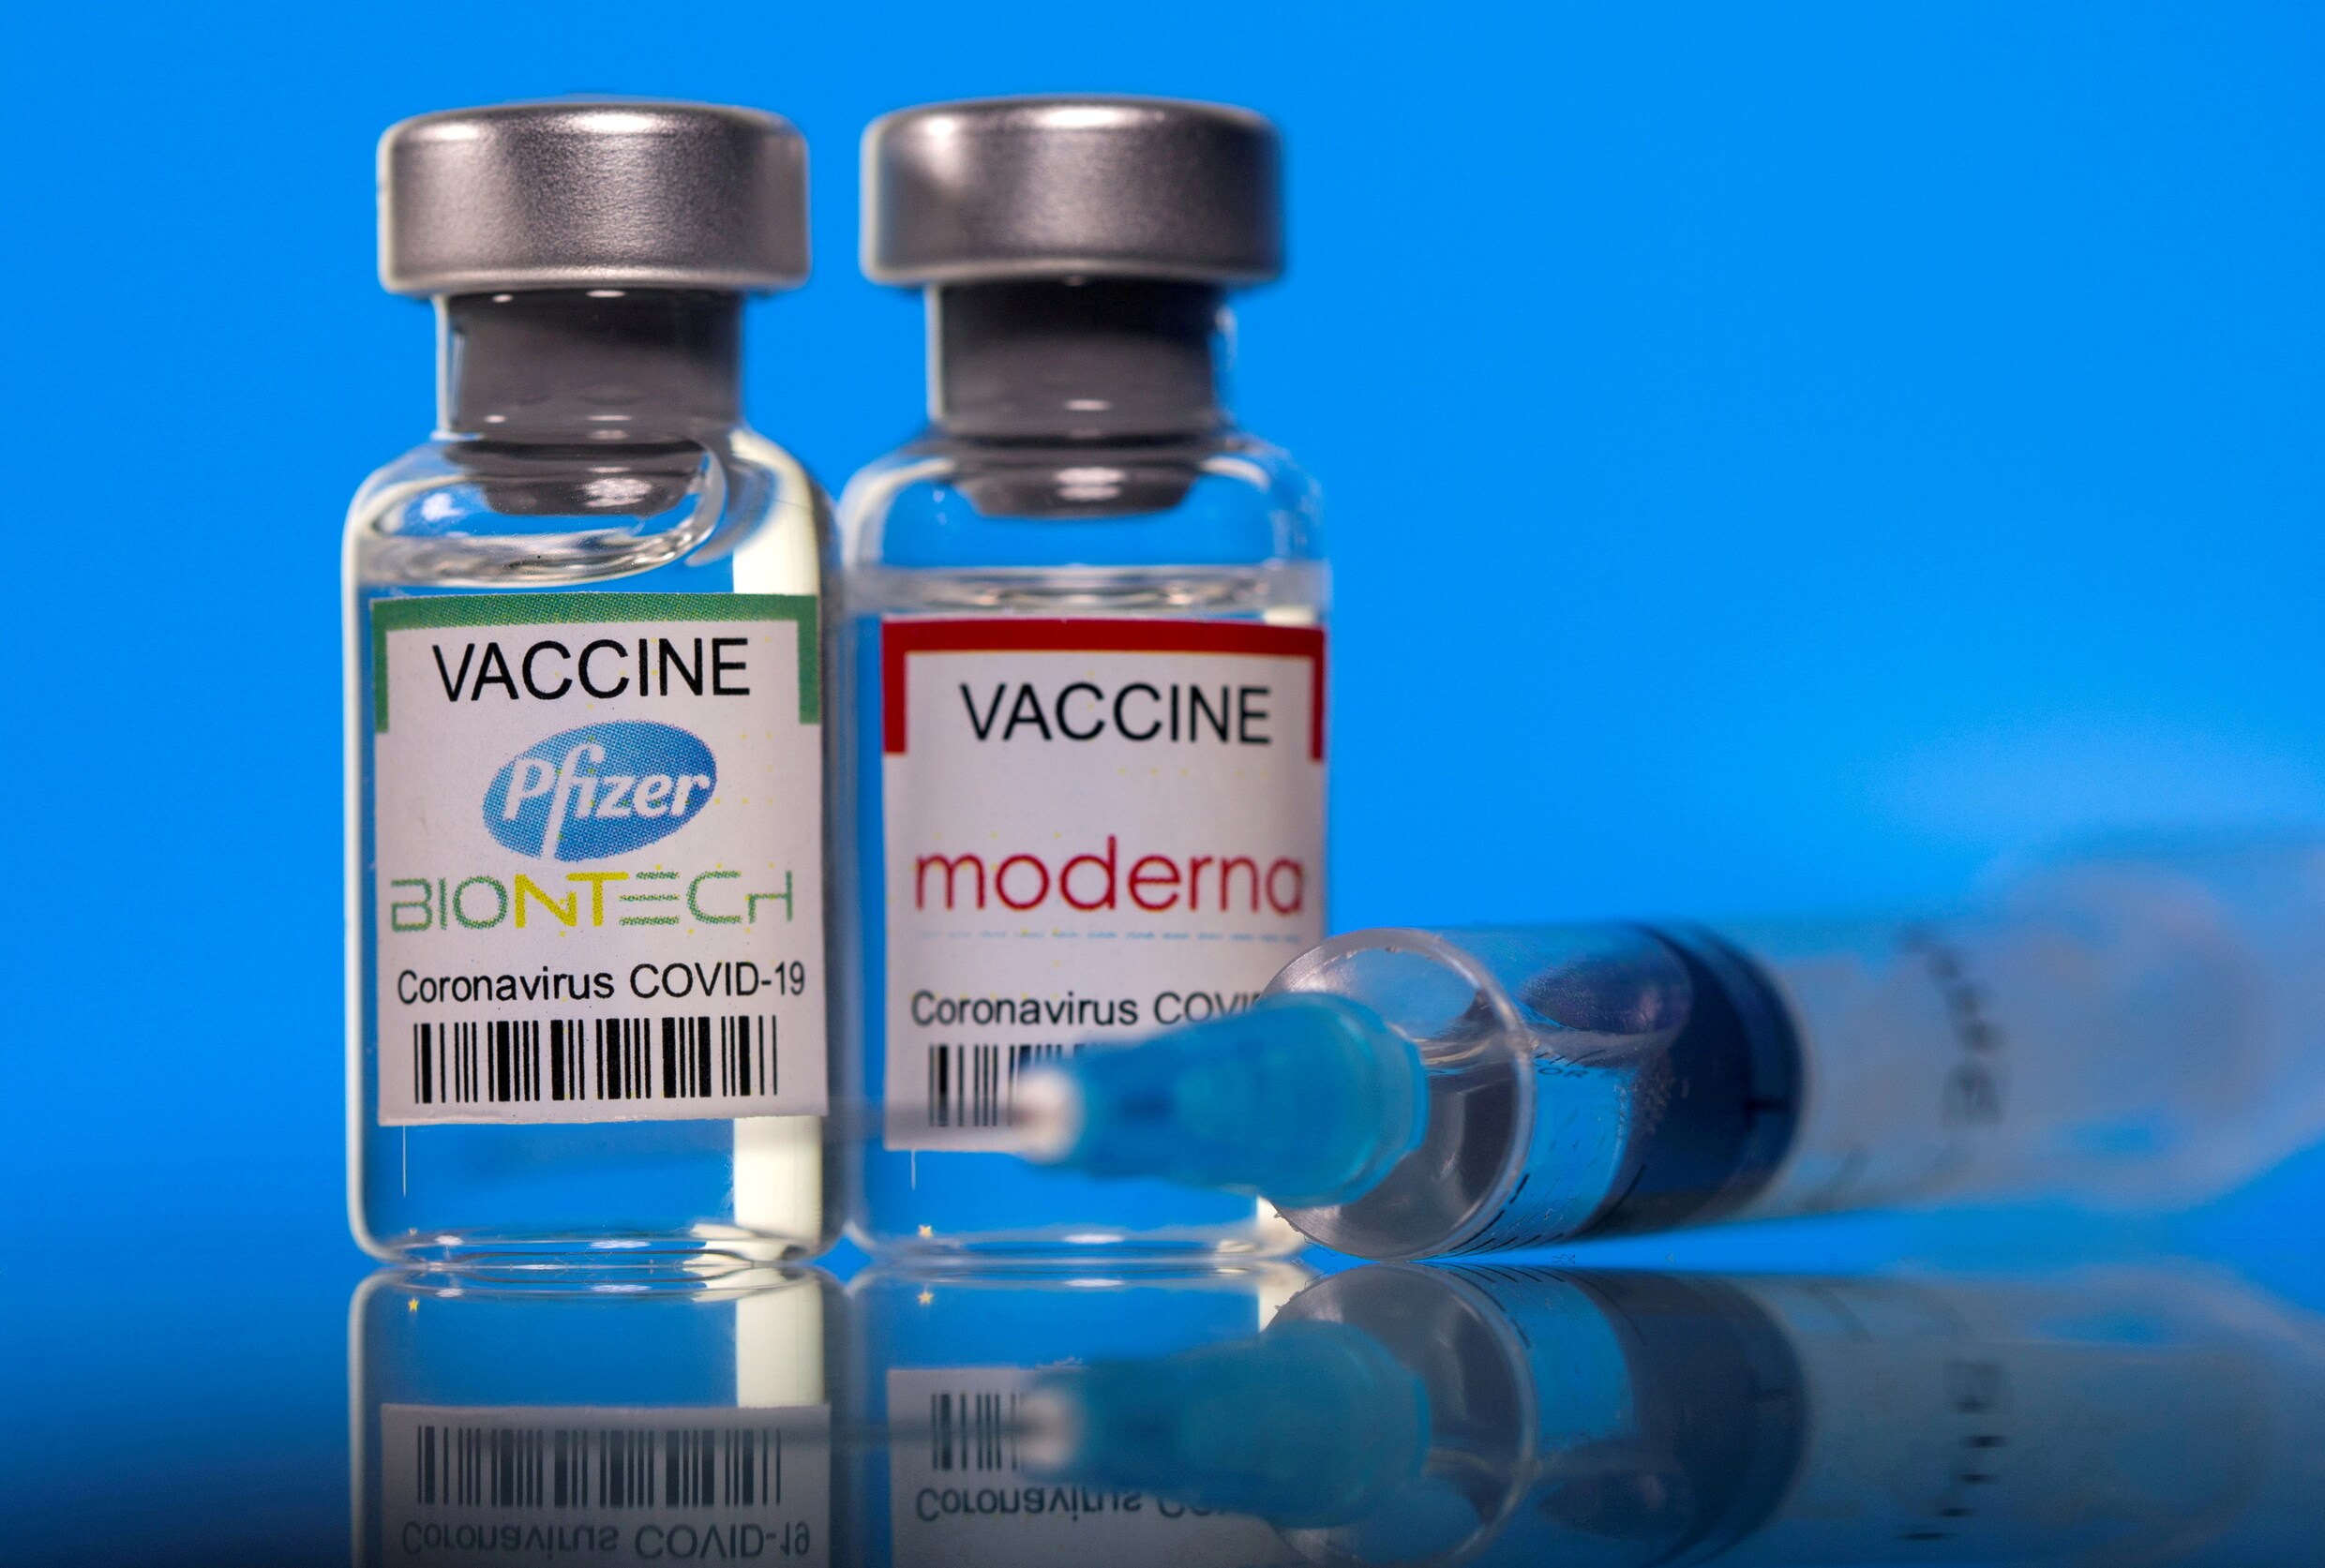 ‘Ze zijn gewoon uit op woekerwinsten’: na prijsverhoging Pfizer en Moderna eist PVDA transparantie over vaccinprijzen